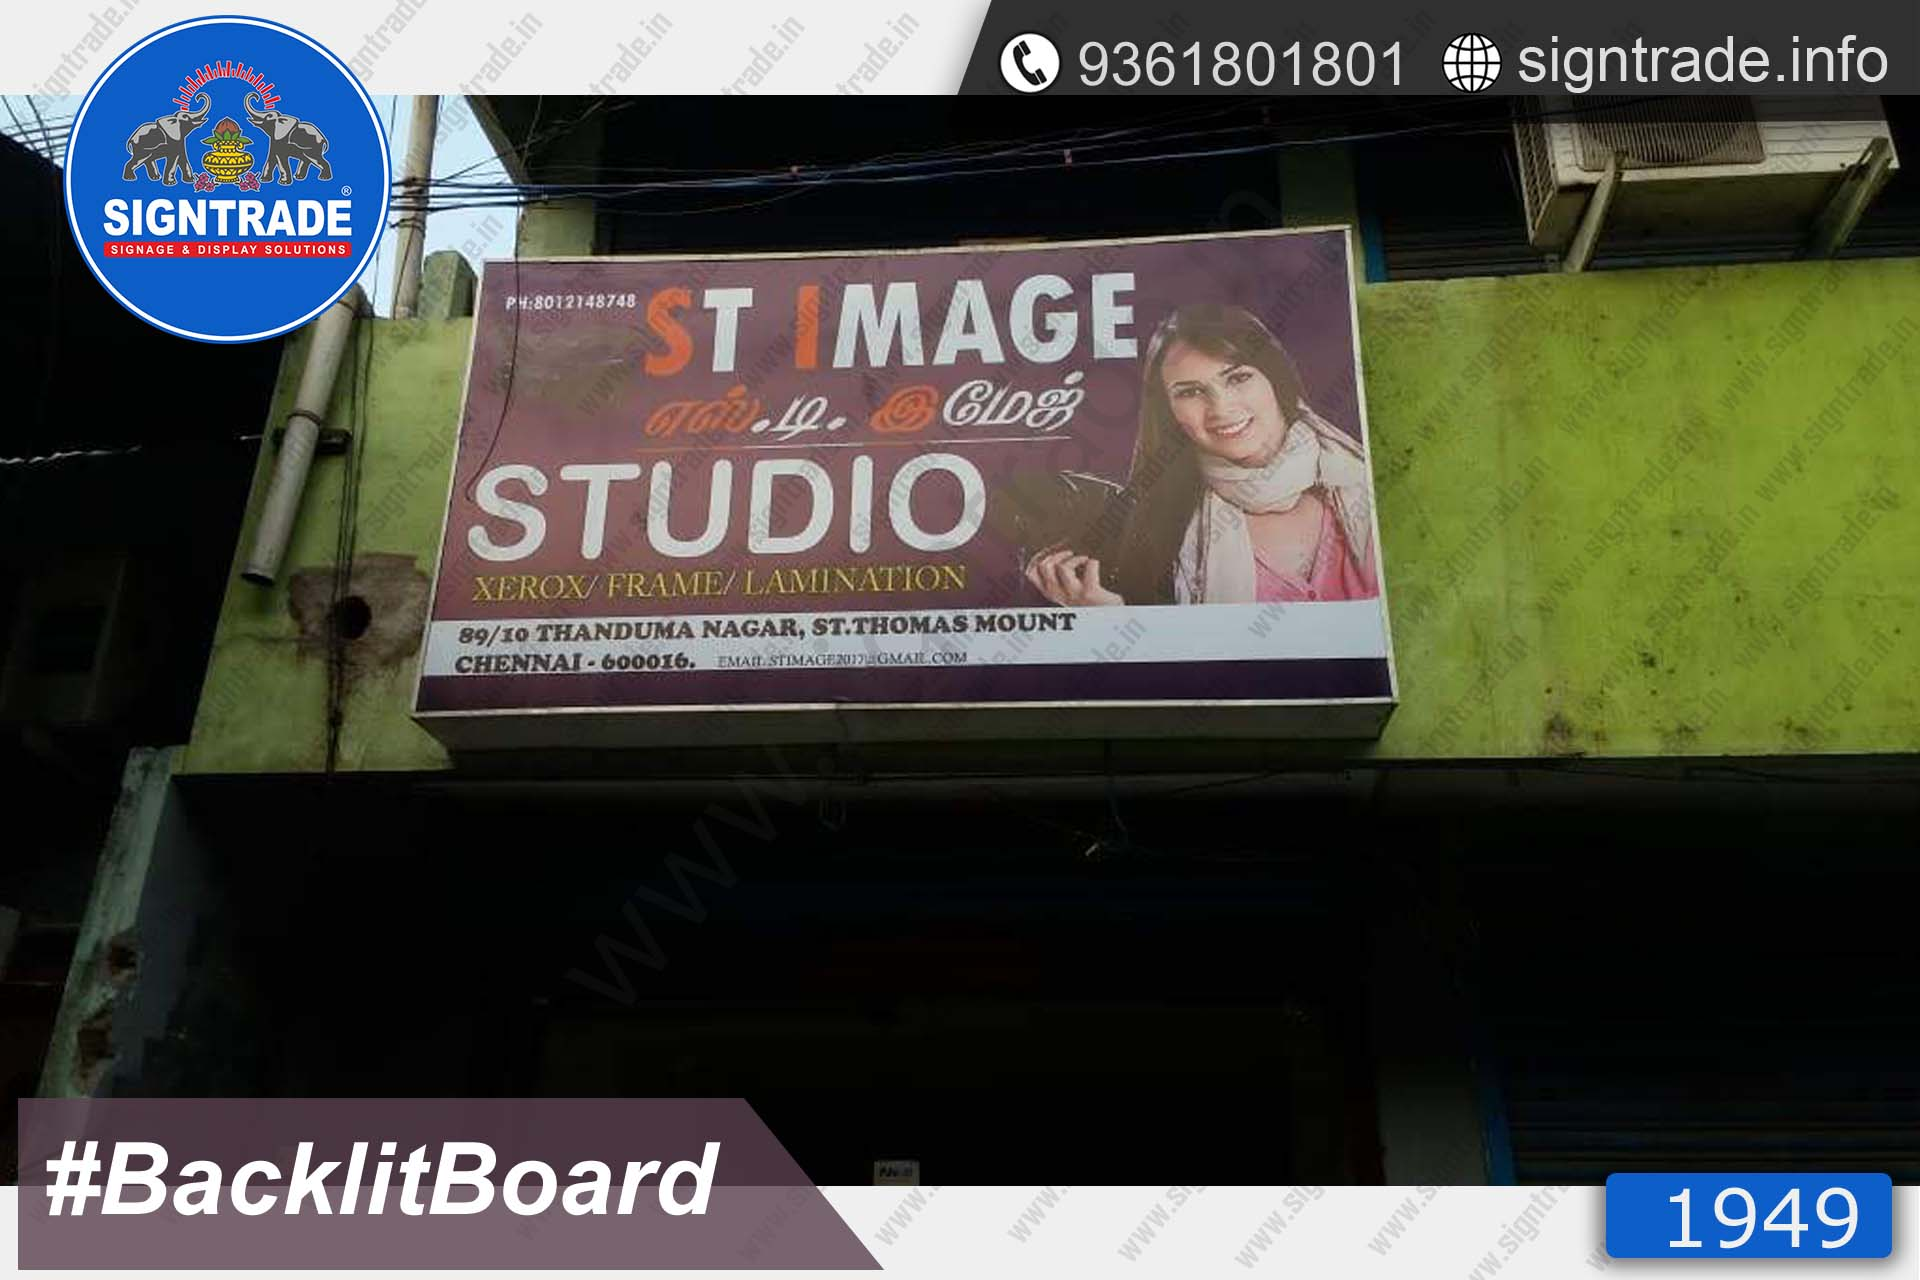 stimage studio backlit board